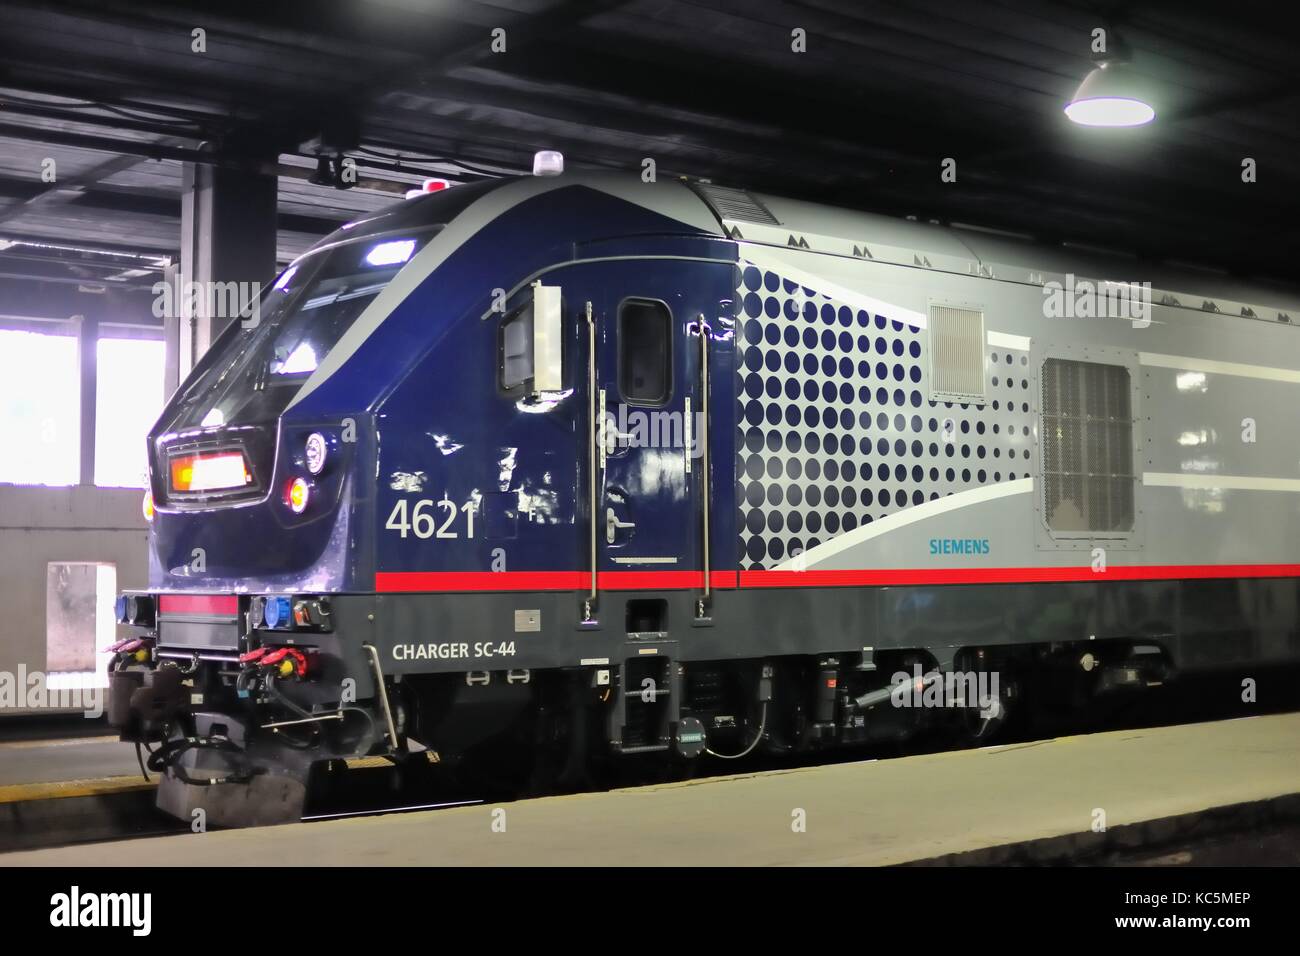 Eine Amtrak SC-44 Lokomotive führenden einen Personenzug warten auf Abfahrt auf einem Track im Zug in Chicago's Union Station werfen. Stockfoto